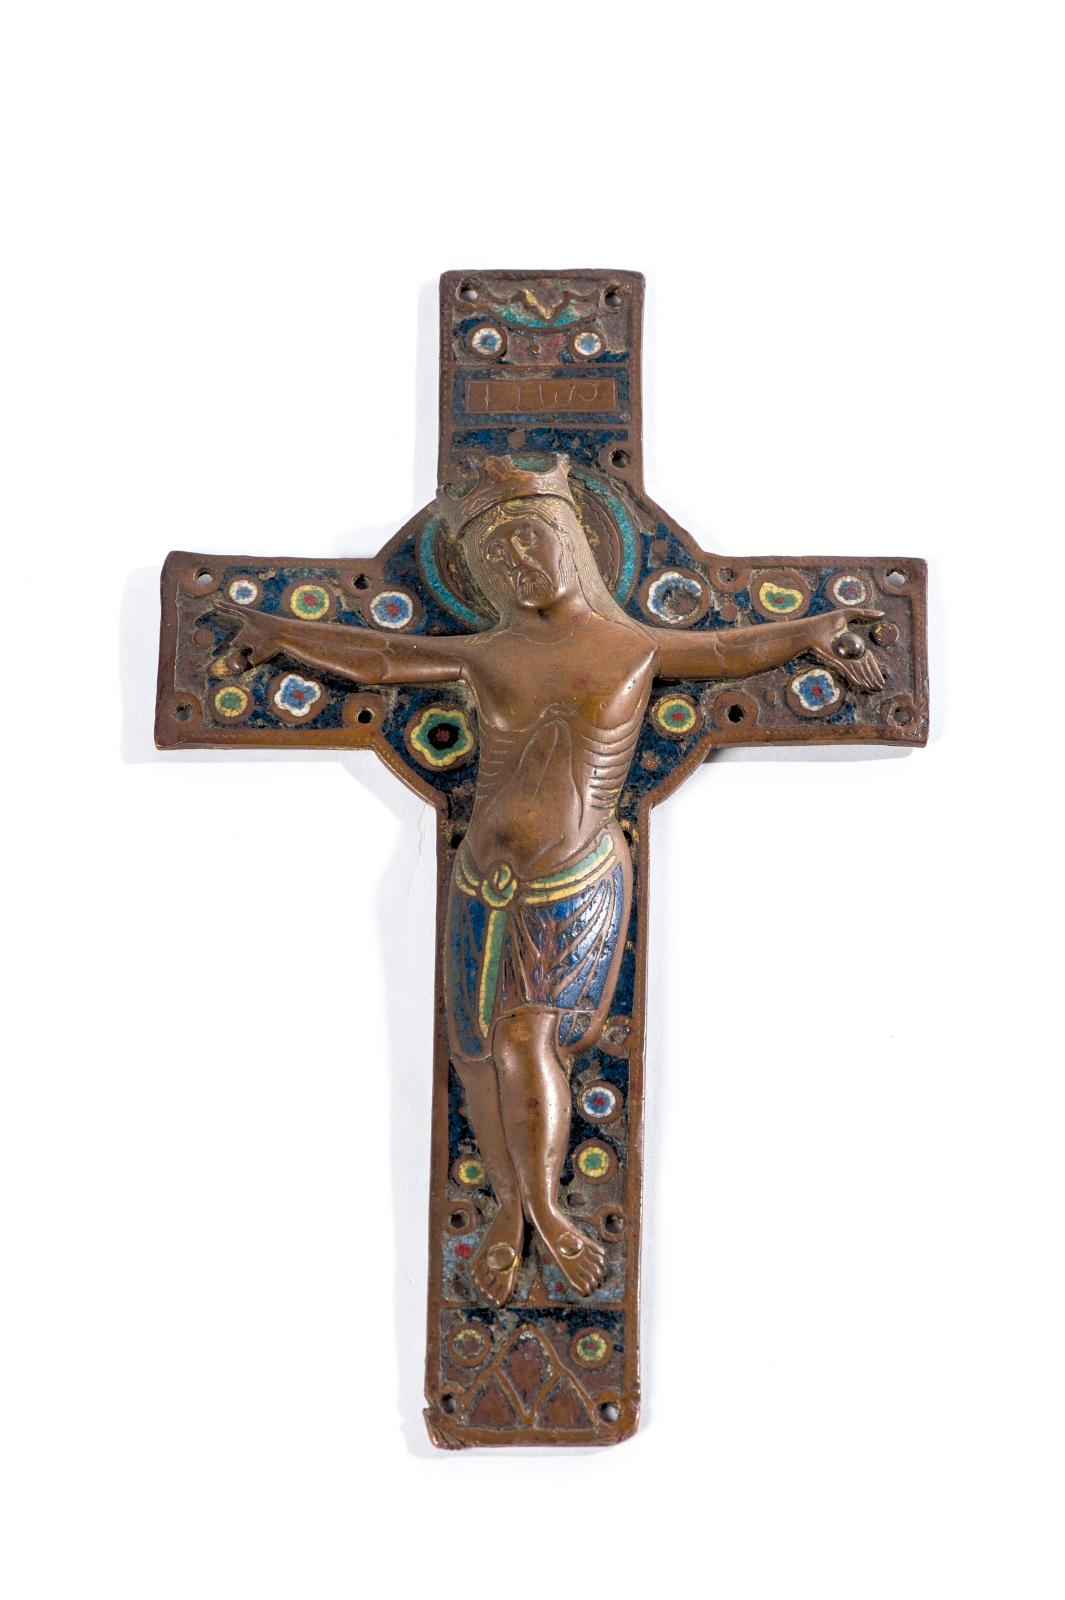 Un Christ en émaux de Limoges du XIIIe siècle